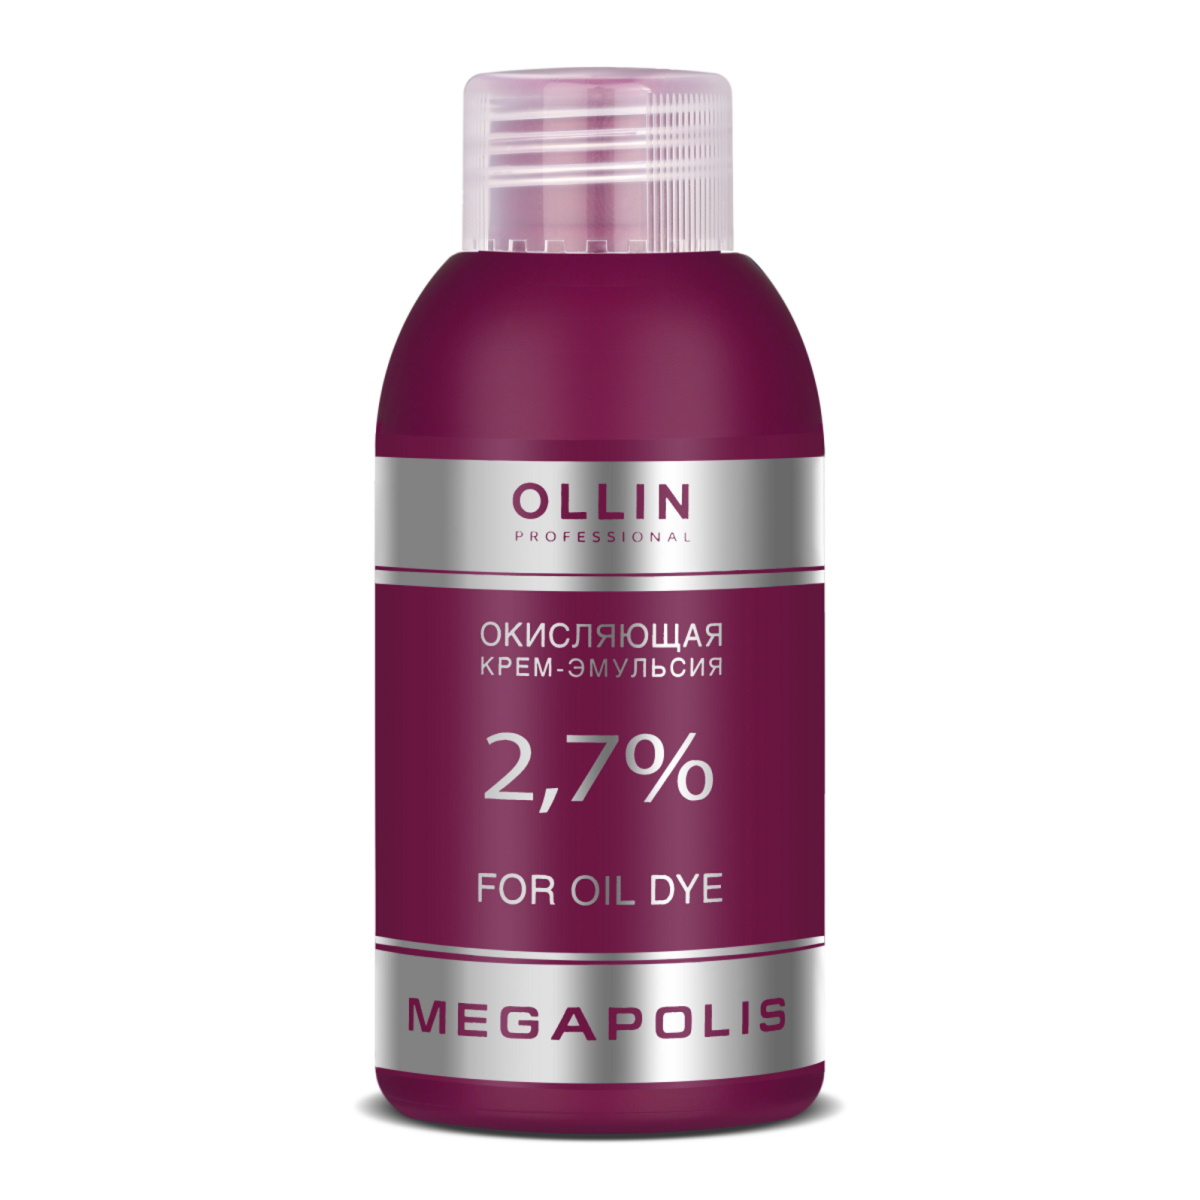 Окисляющая крем-эмульсия Ollin Professional Megapolis 2,7% 75 мл ollin megapolis шампунь на основе черного риса 400 мл